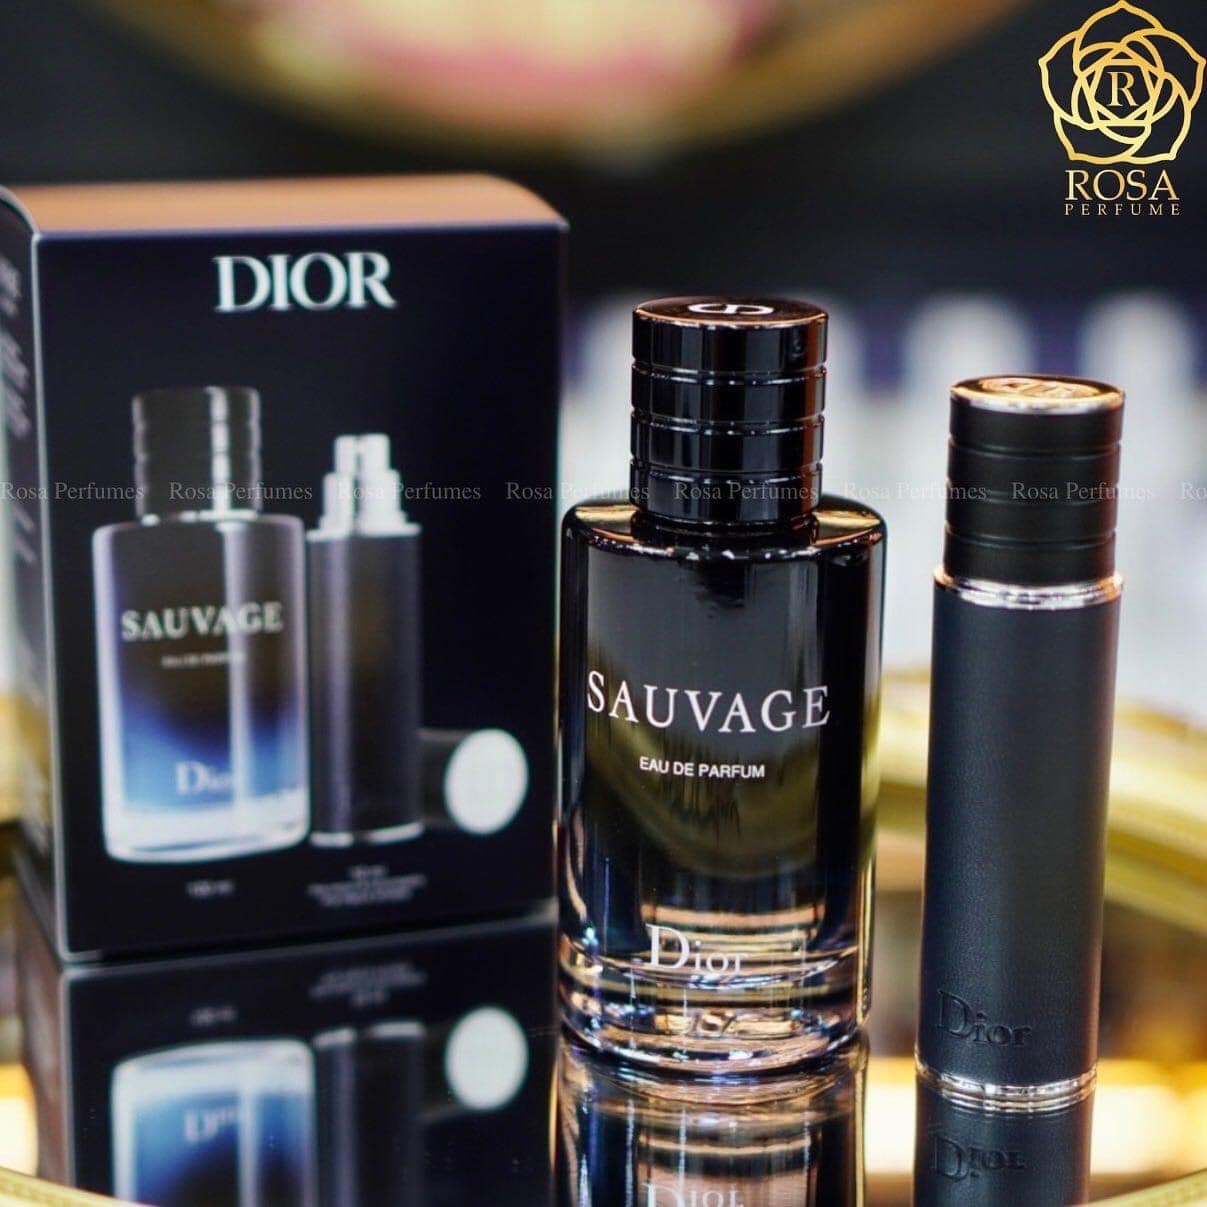 Dior Sauvage EDP Gift Set 4 - Nuochoarosa.com - Nước hoa cao cấp, chính hãng giá tốt, mẫu mới